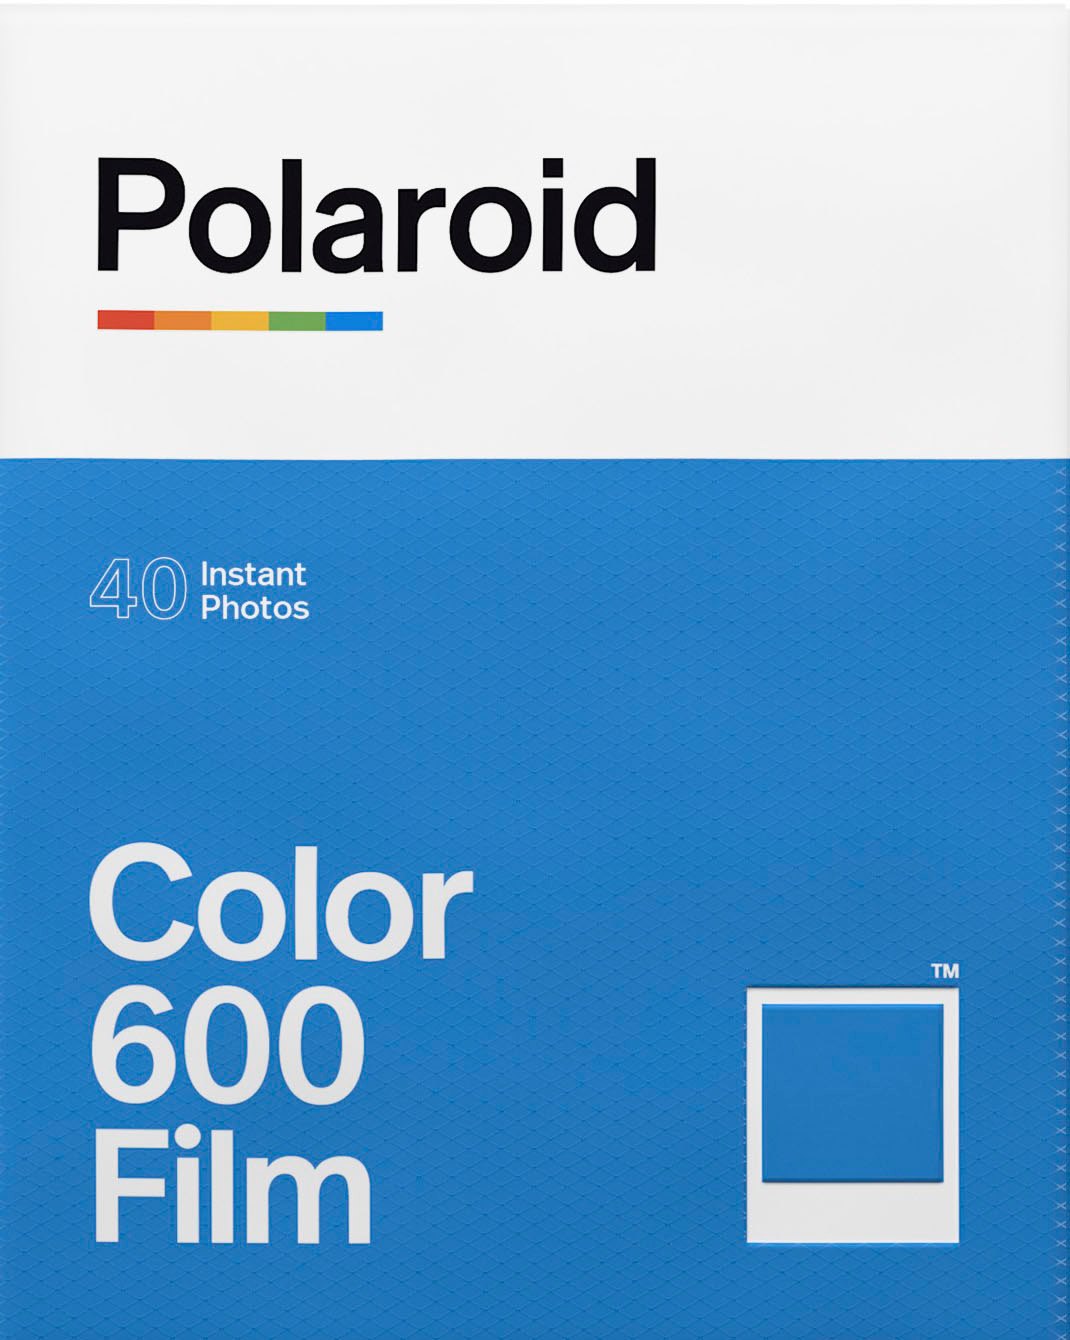 Color 600 Film